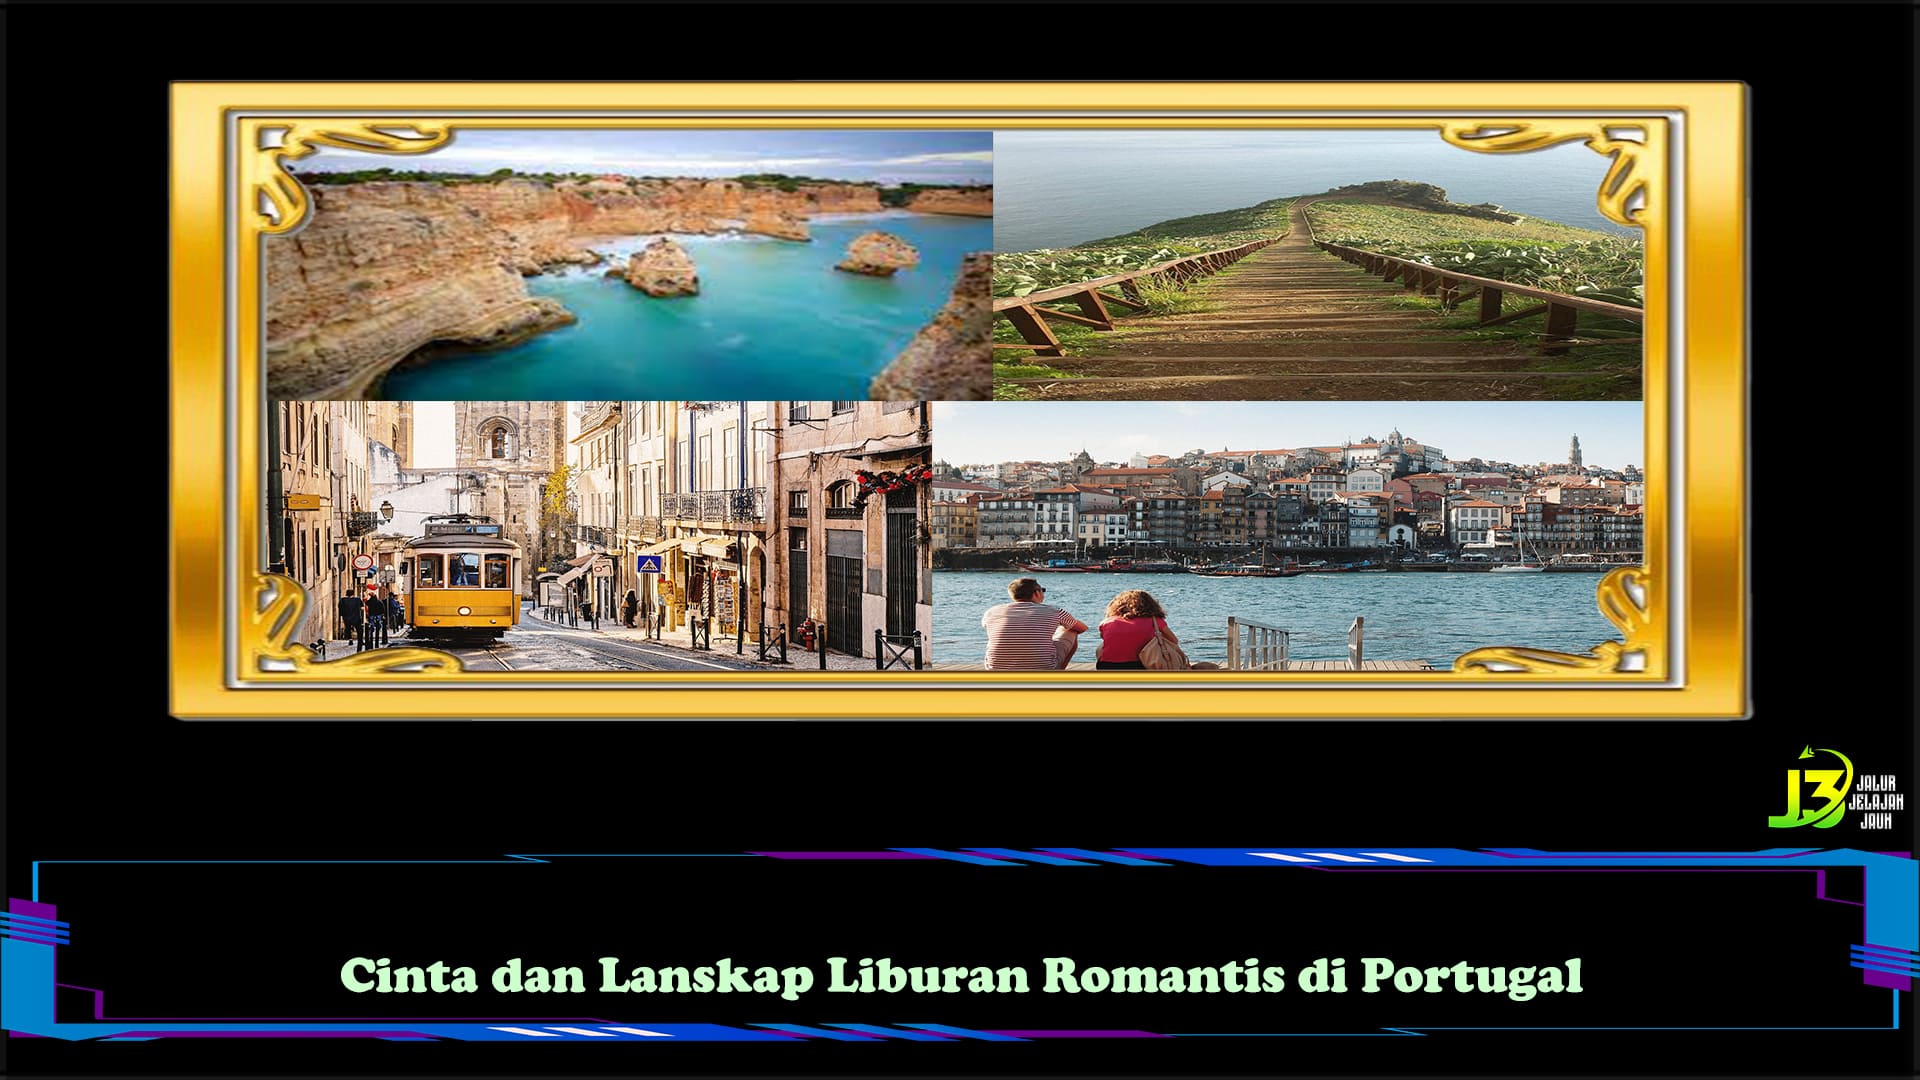 Cinta dan Lanskap Liburan Romantis di Portugal